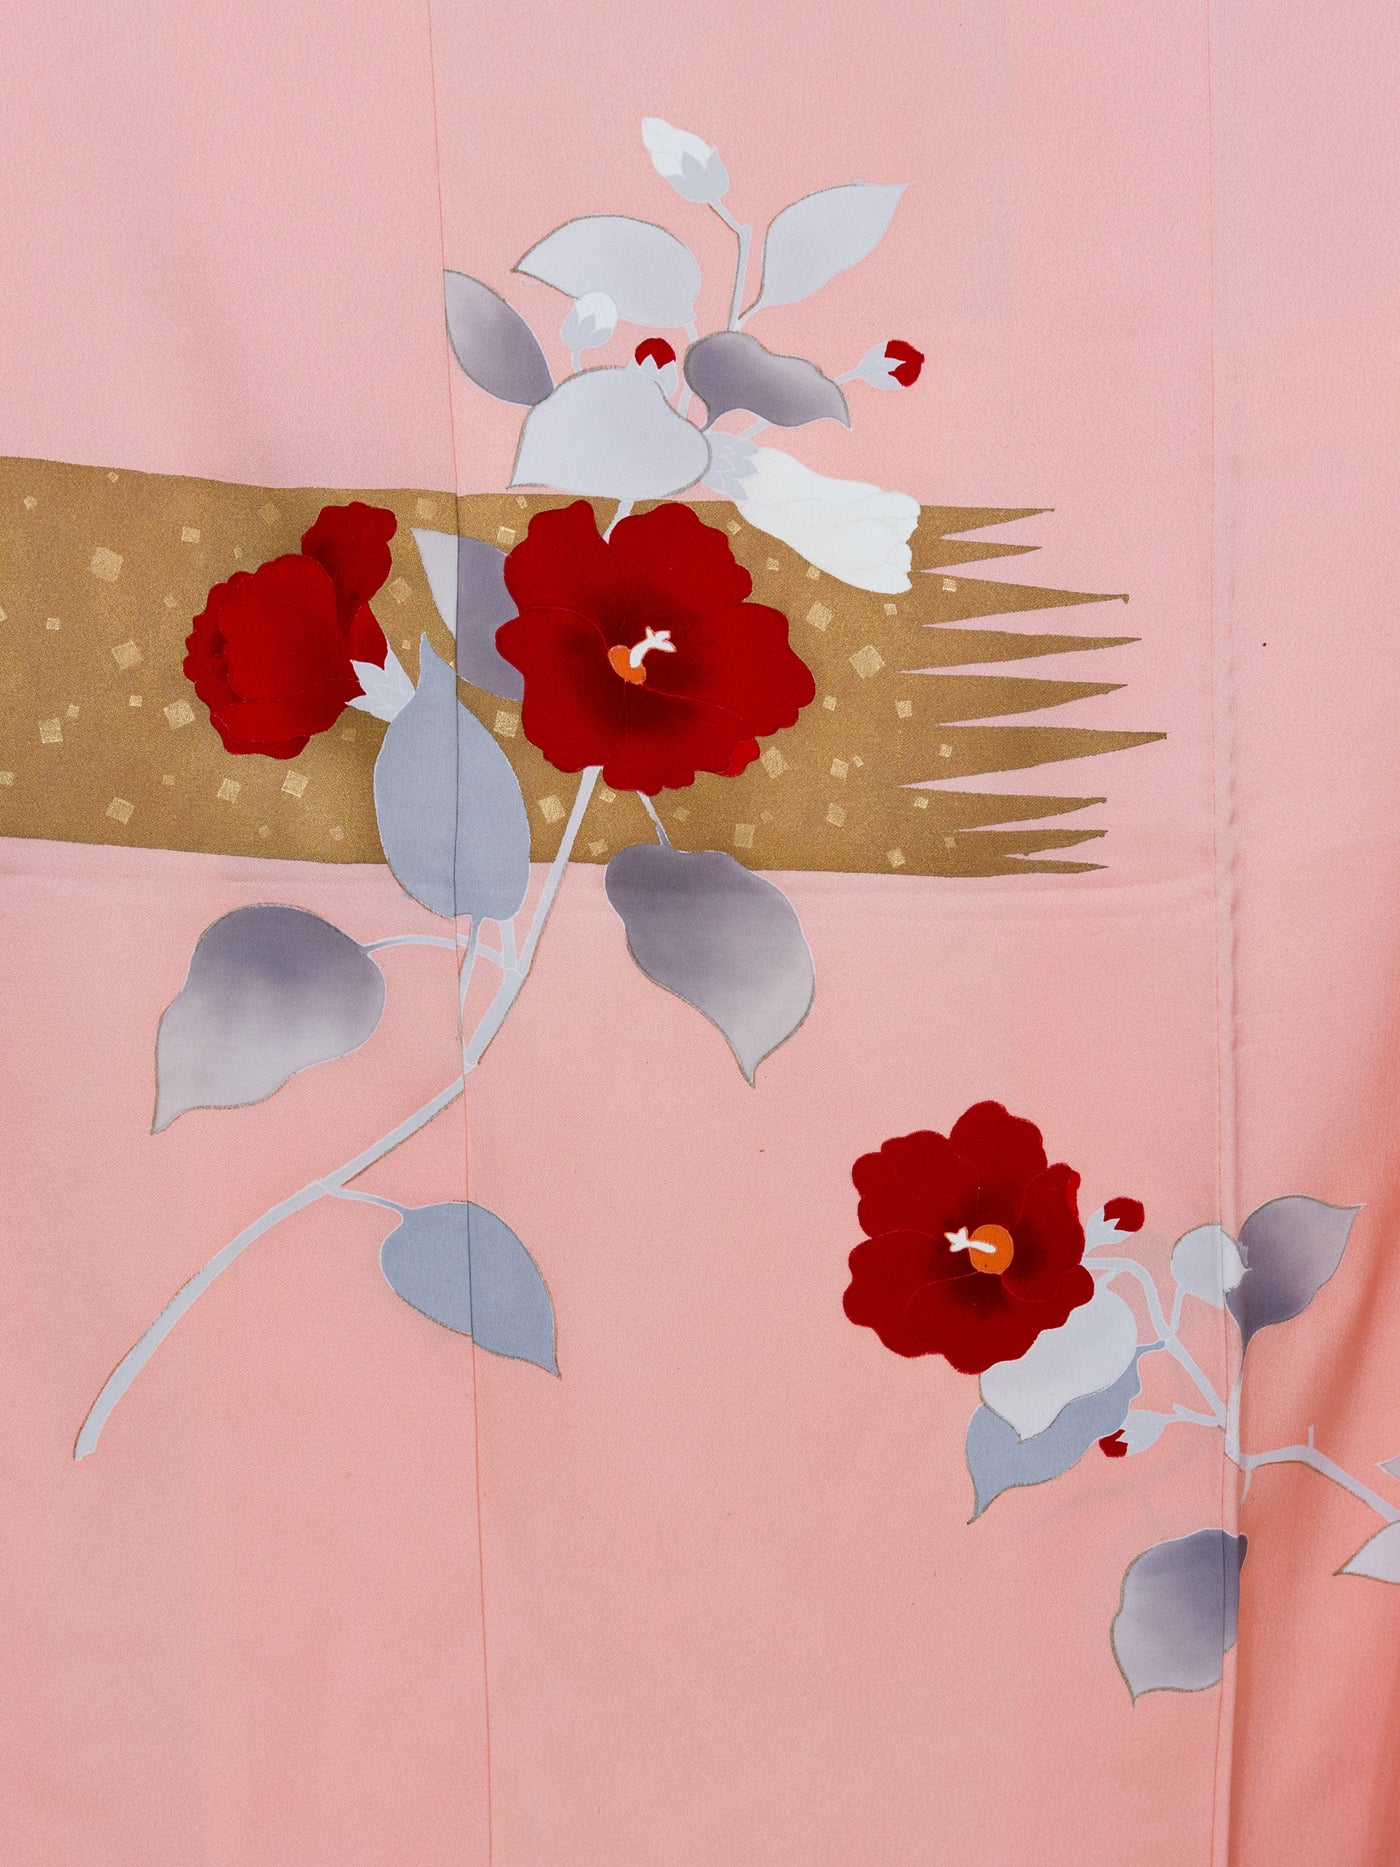 Kimono Japonais Vintage Bara en Soie